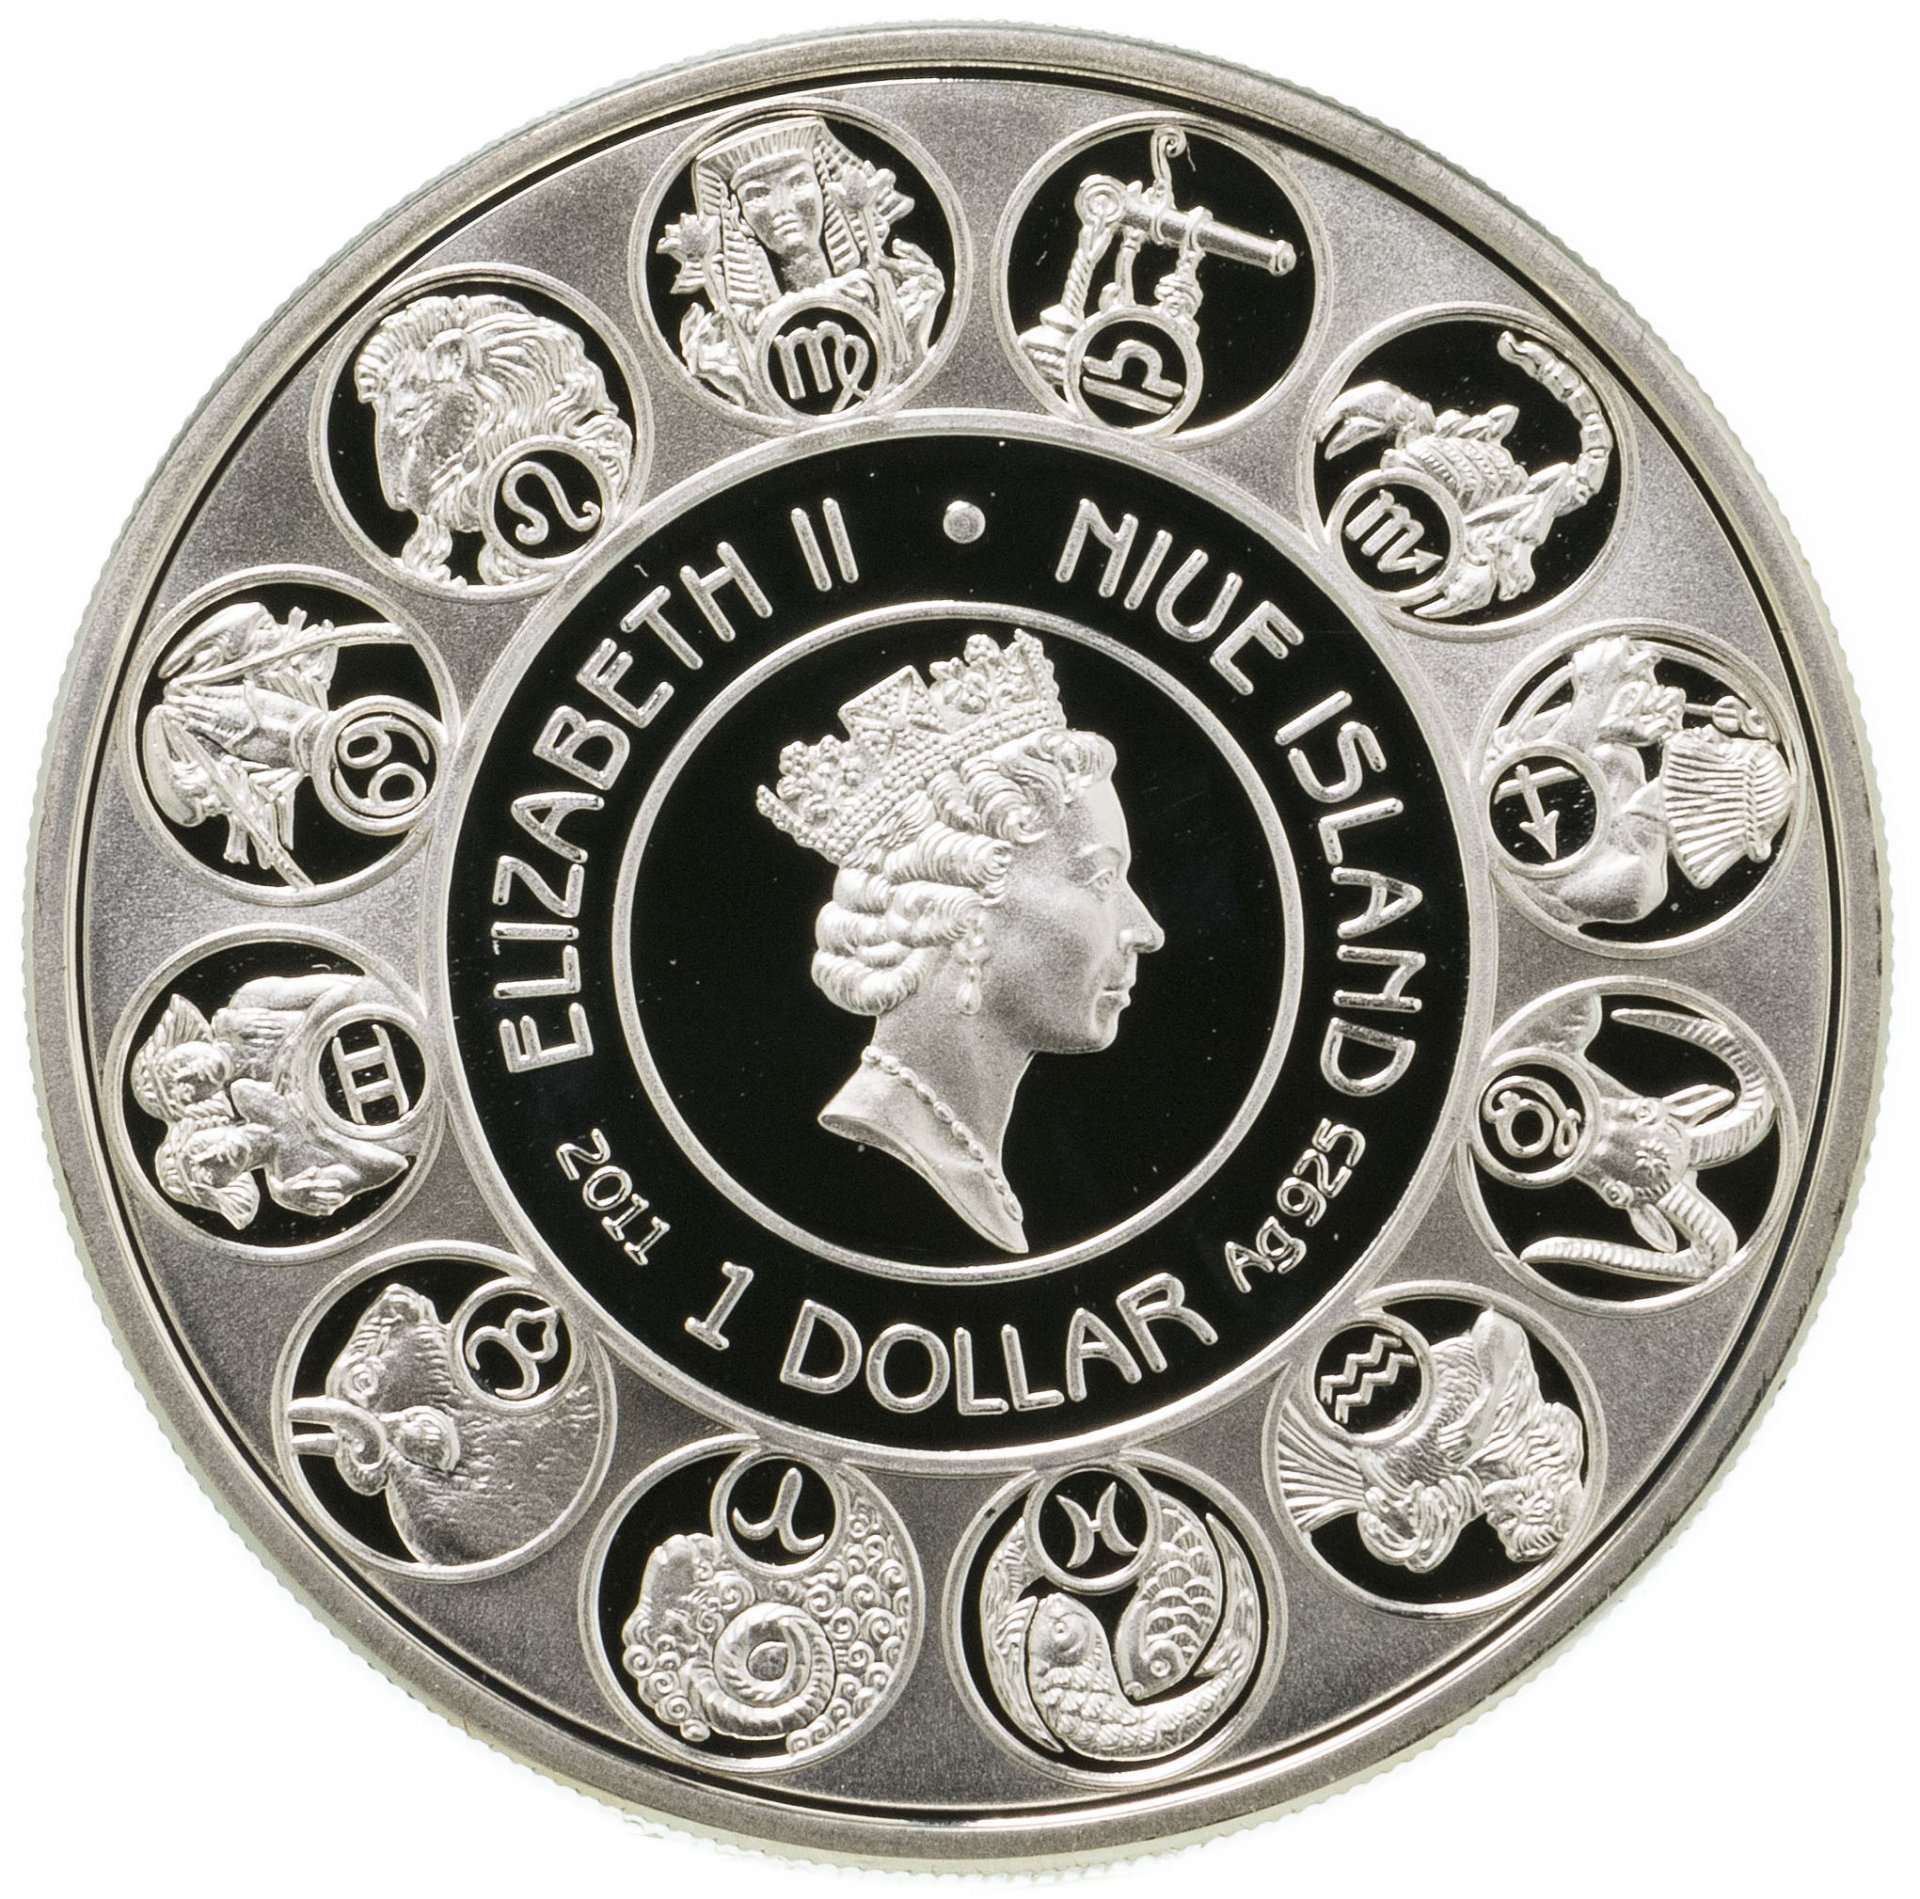 Купить серебряные монеты цены. Ниуэ 1 доллар, 2010 знаки зодиака - Водолей. Монеты Дева серебро Ниуэ. Монеты Ниуэ знаки зодиака. Монета Ниуэ 2010 1 доллар серебро.